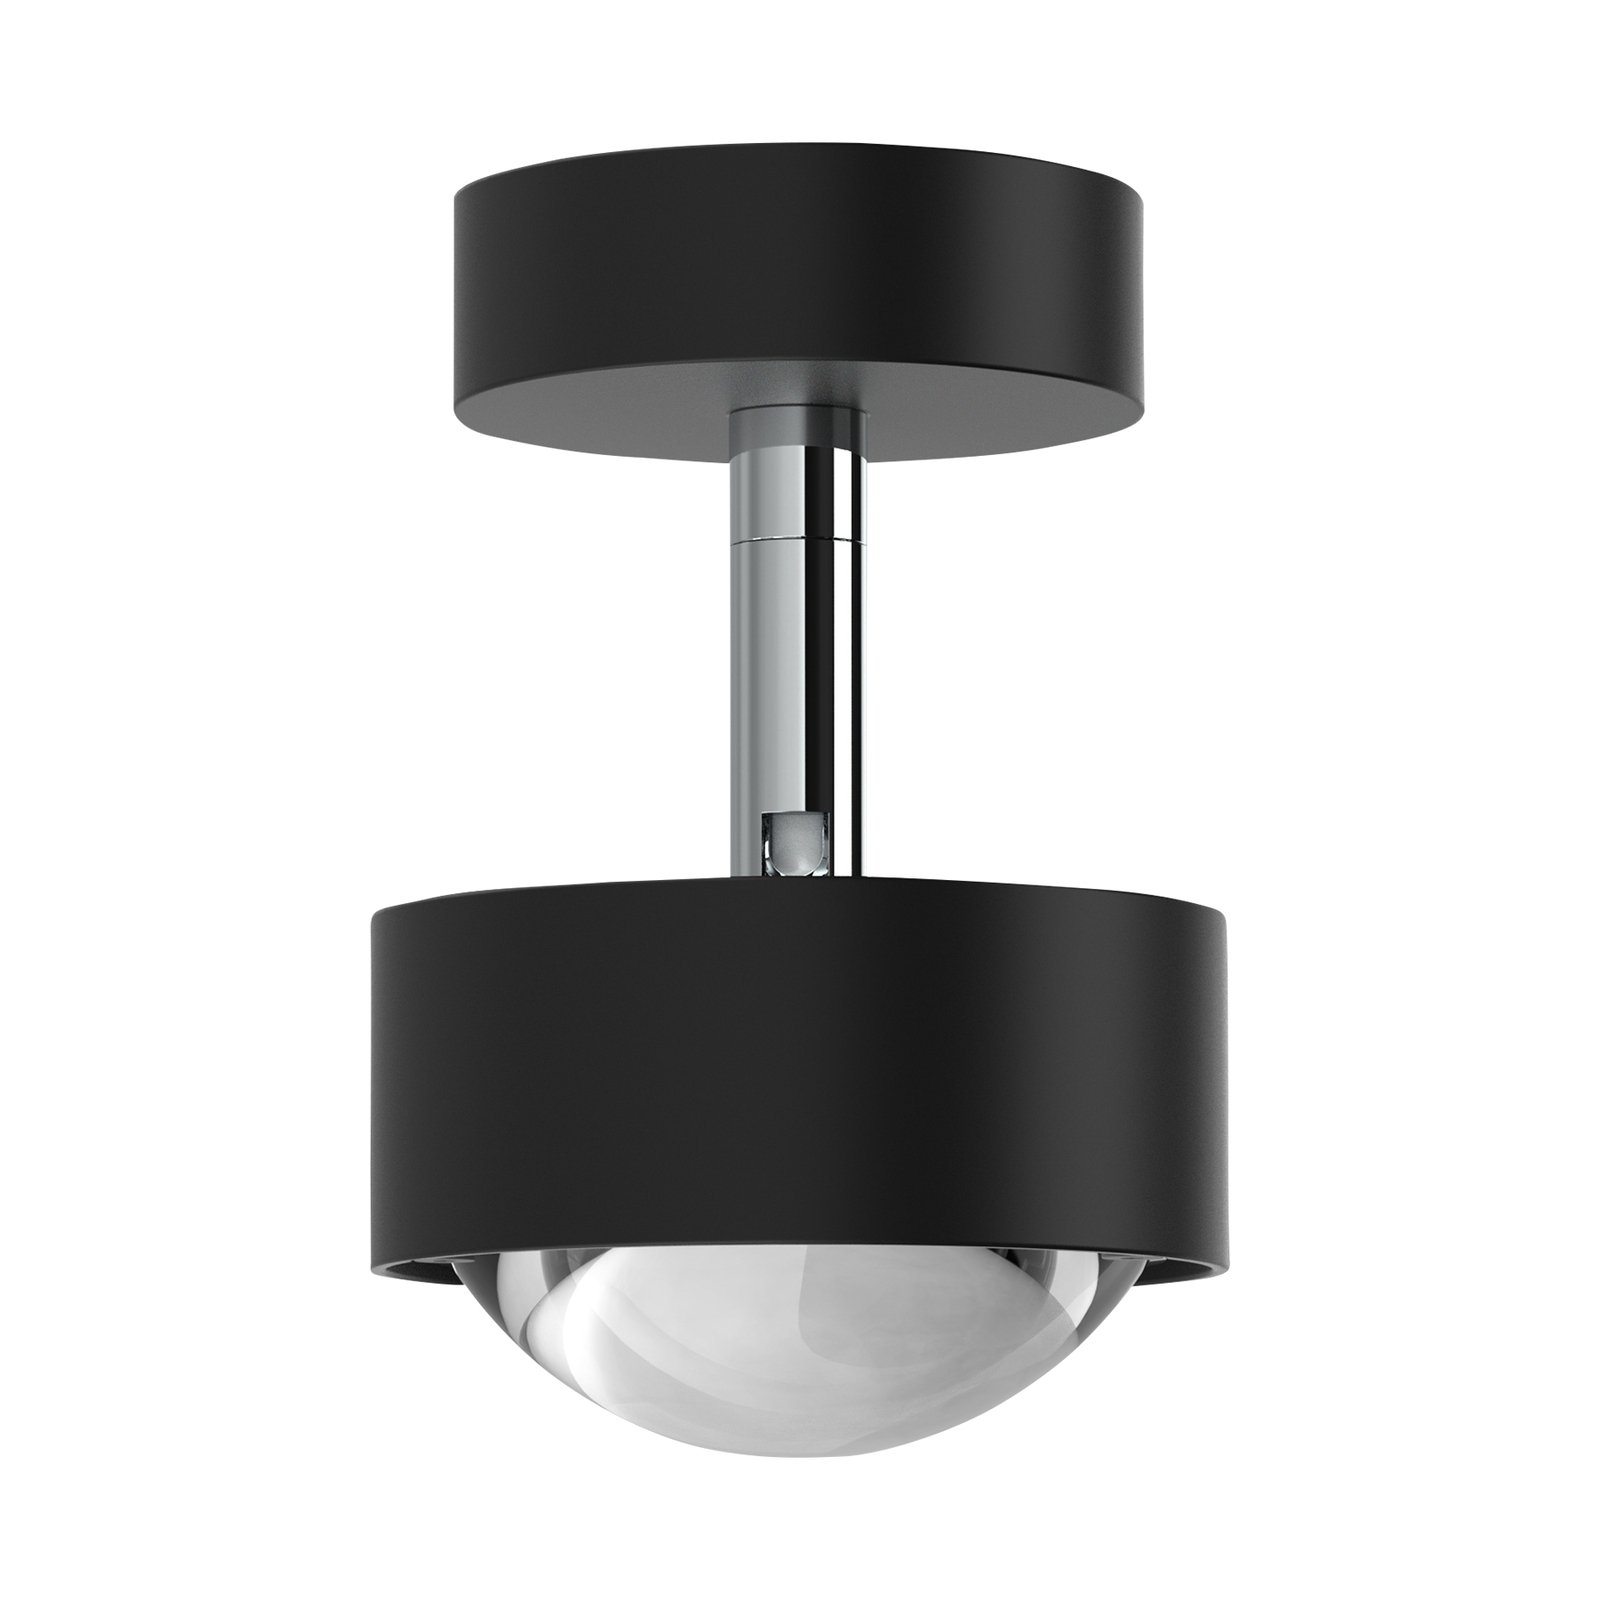 Puk Mini Turn spot LED lentille claire à 1 lampe noir mat